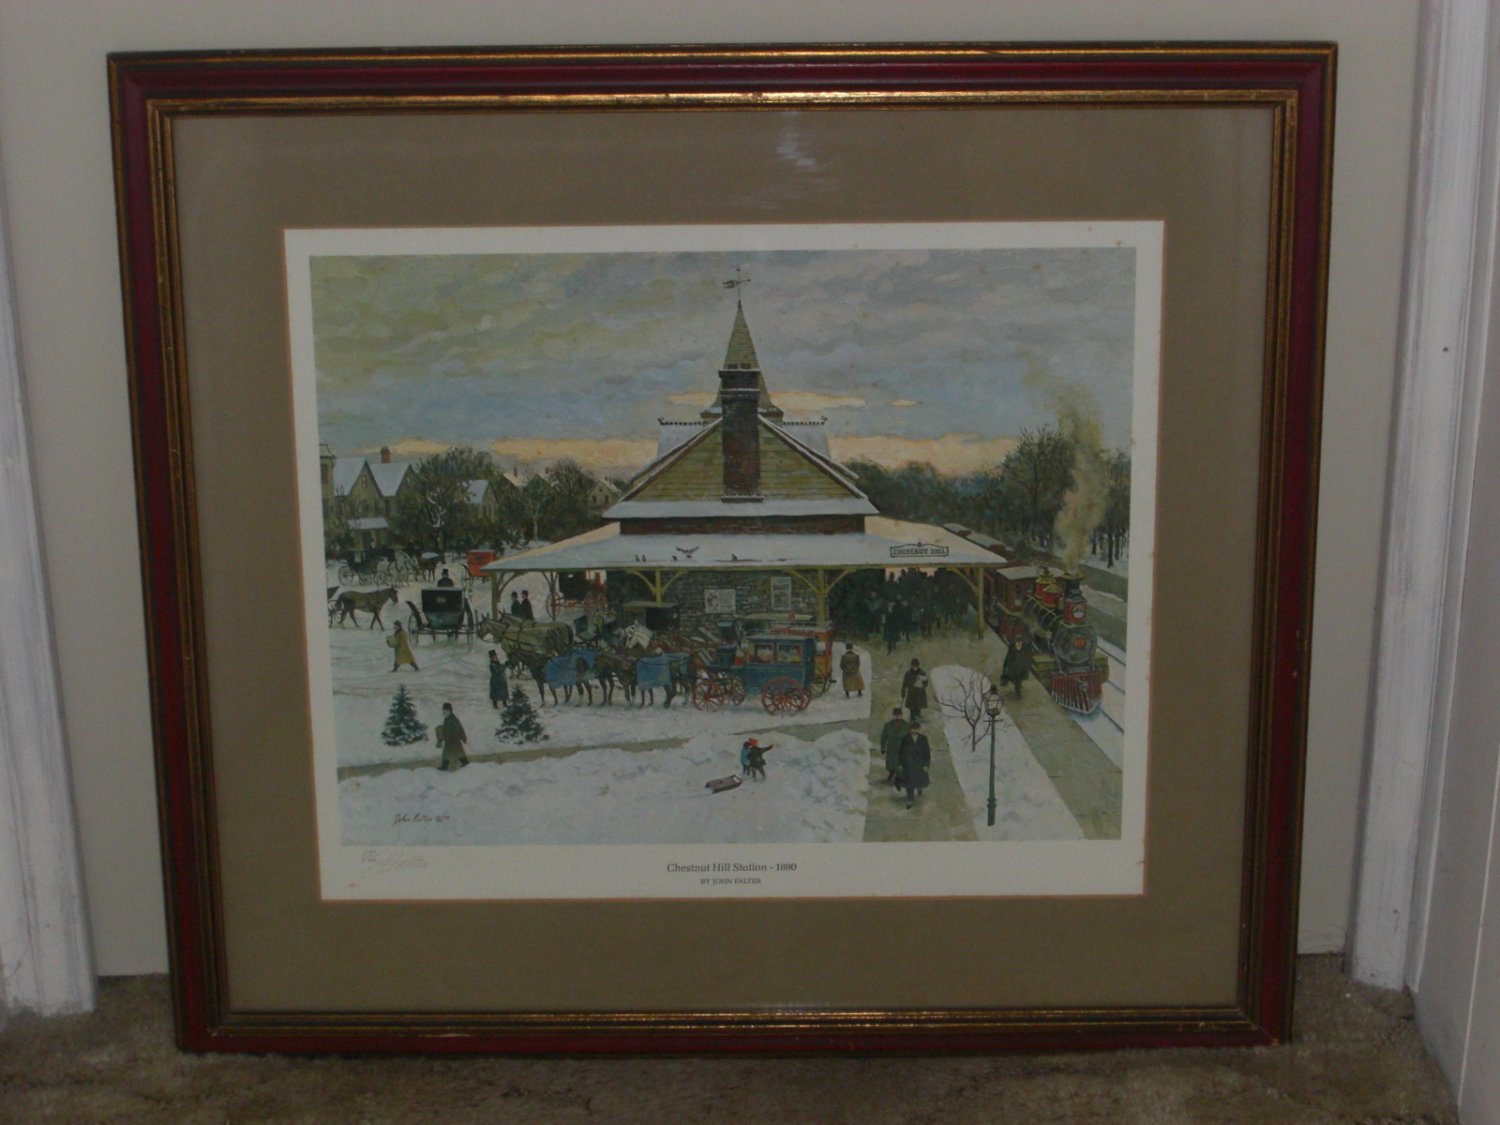 John Falter Framed Print "Chestnut Hill Station, PA," in 1890, Signed, Ltd. Ed.